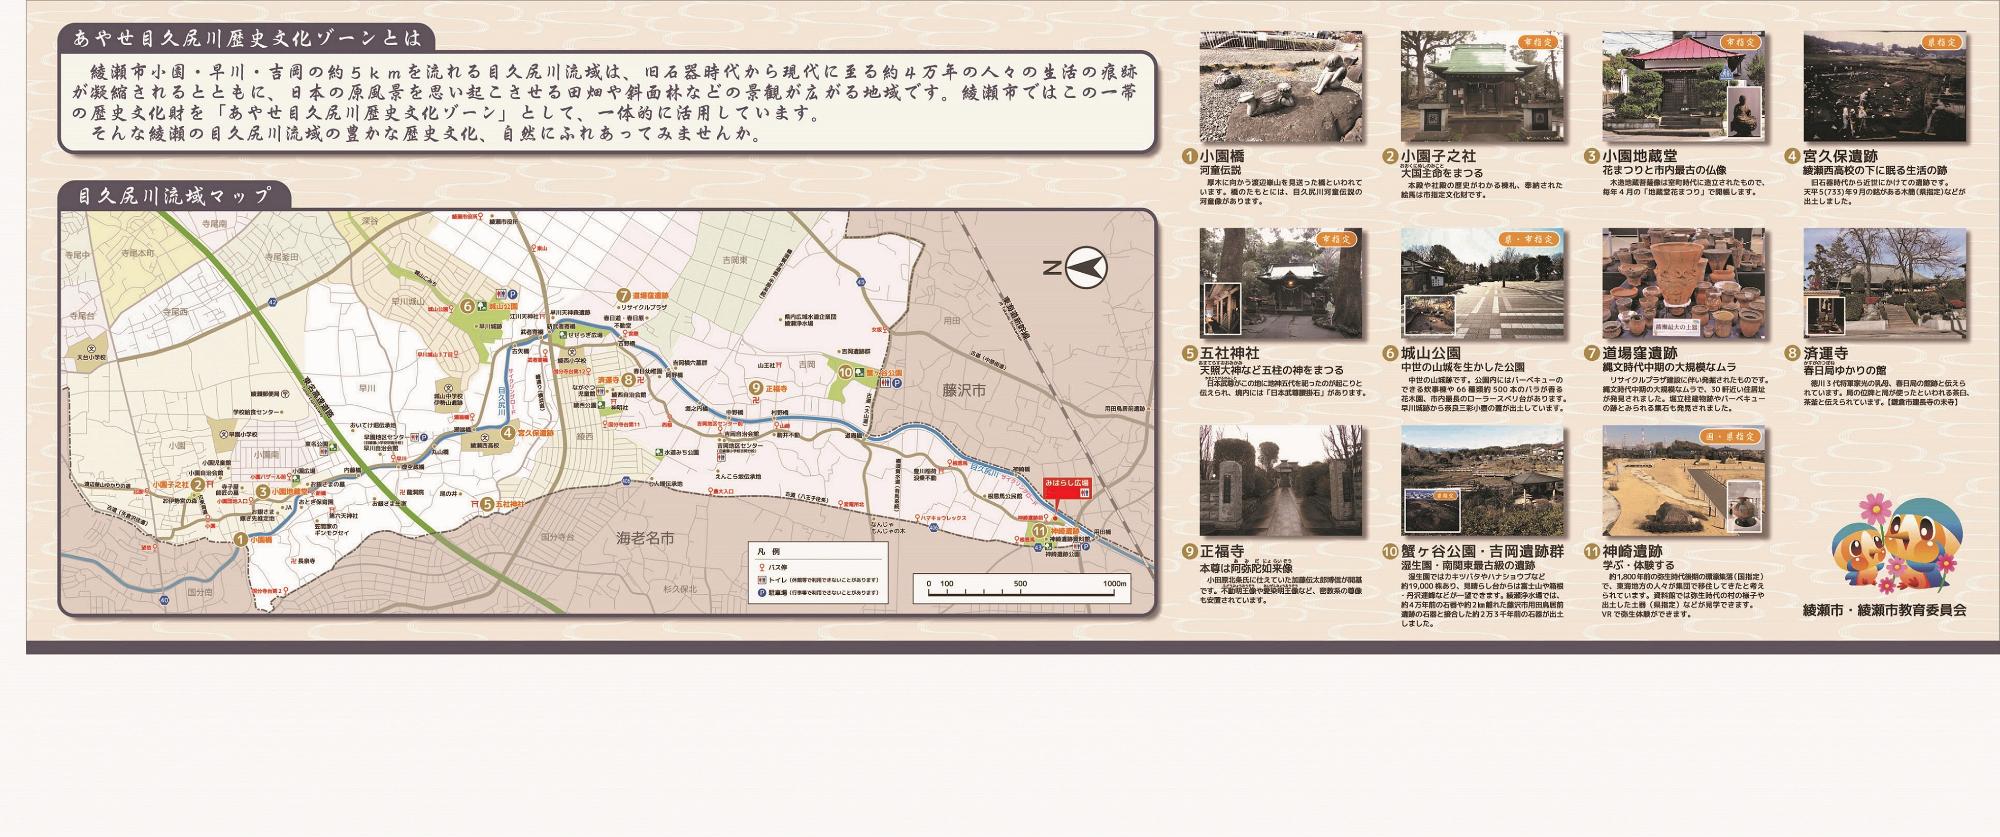 歴史文化ゾーンのスポット箇所を地図と写真で示したあやせ目久尻川歴史文化ゾーンマップ